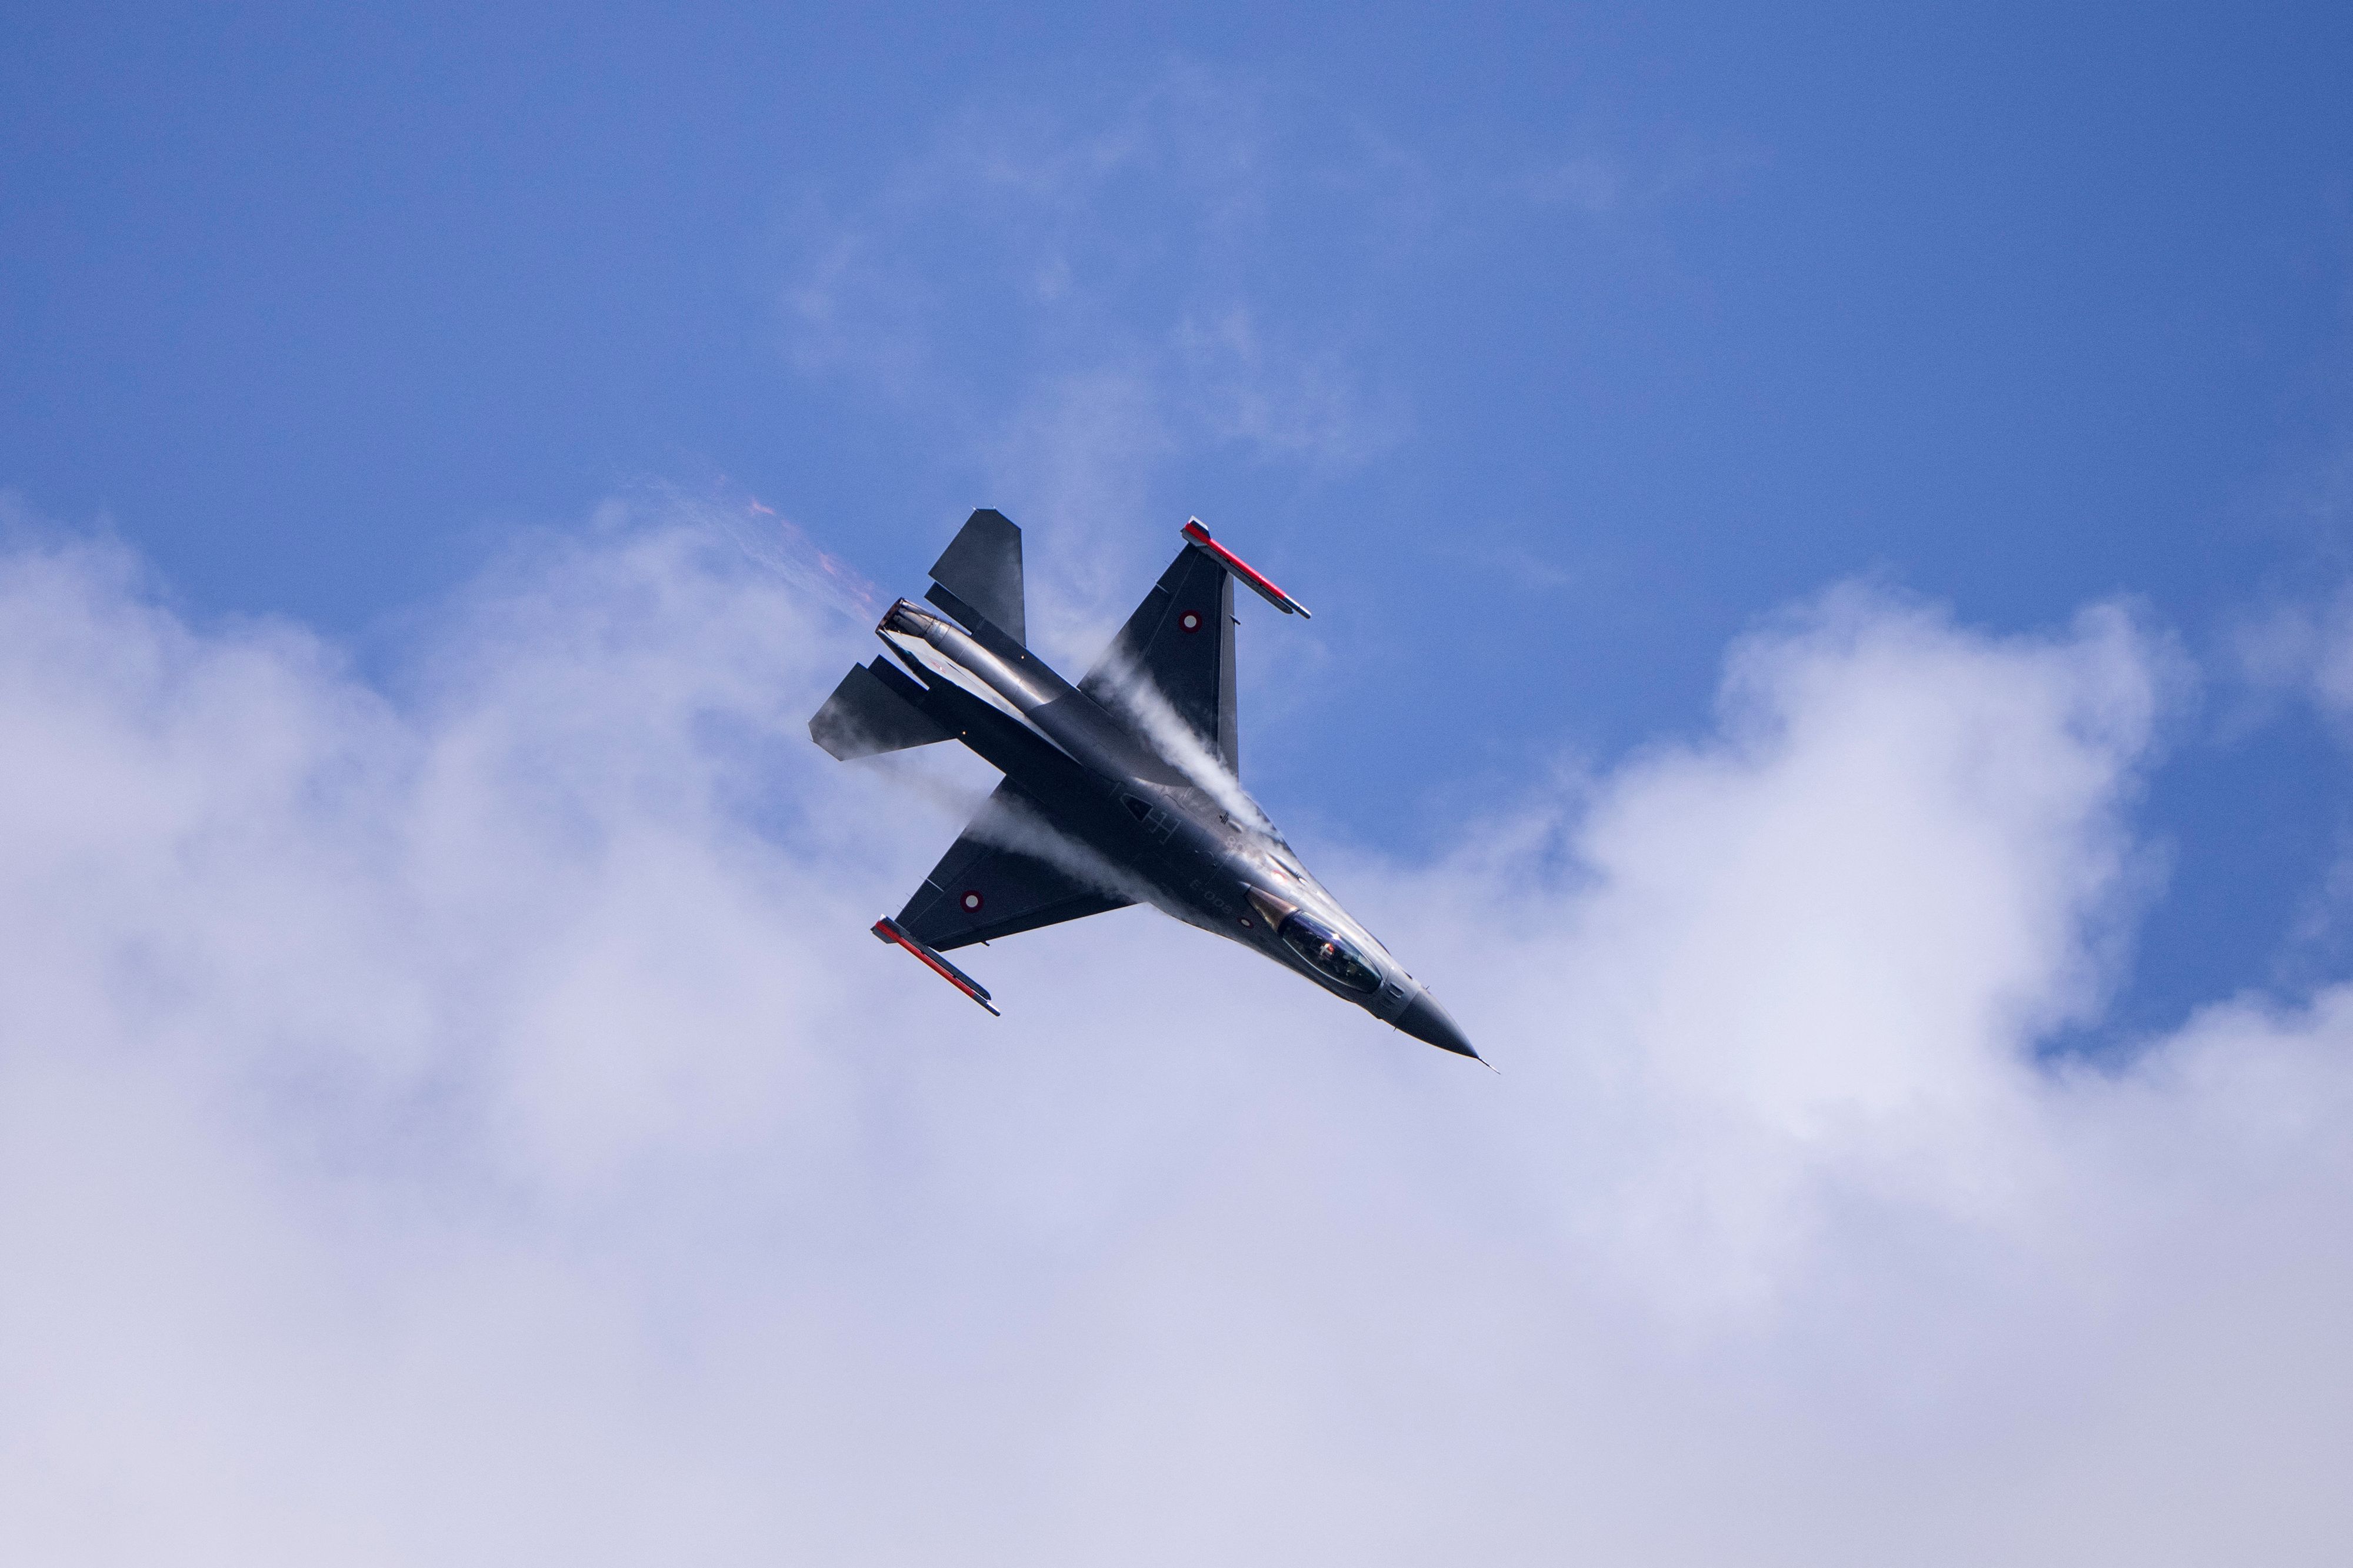 Un F-16 supersonique s'écrase dans un parc national